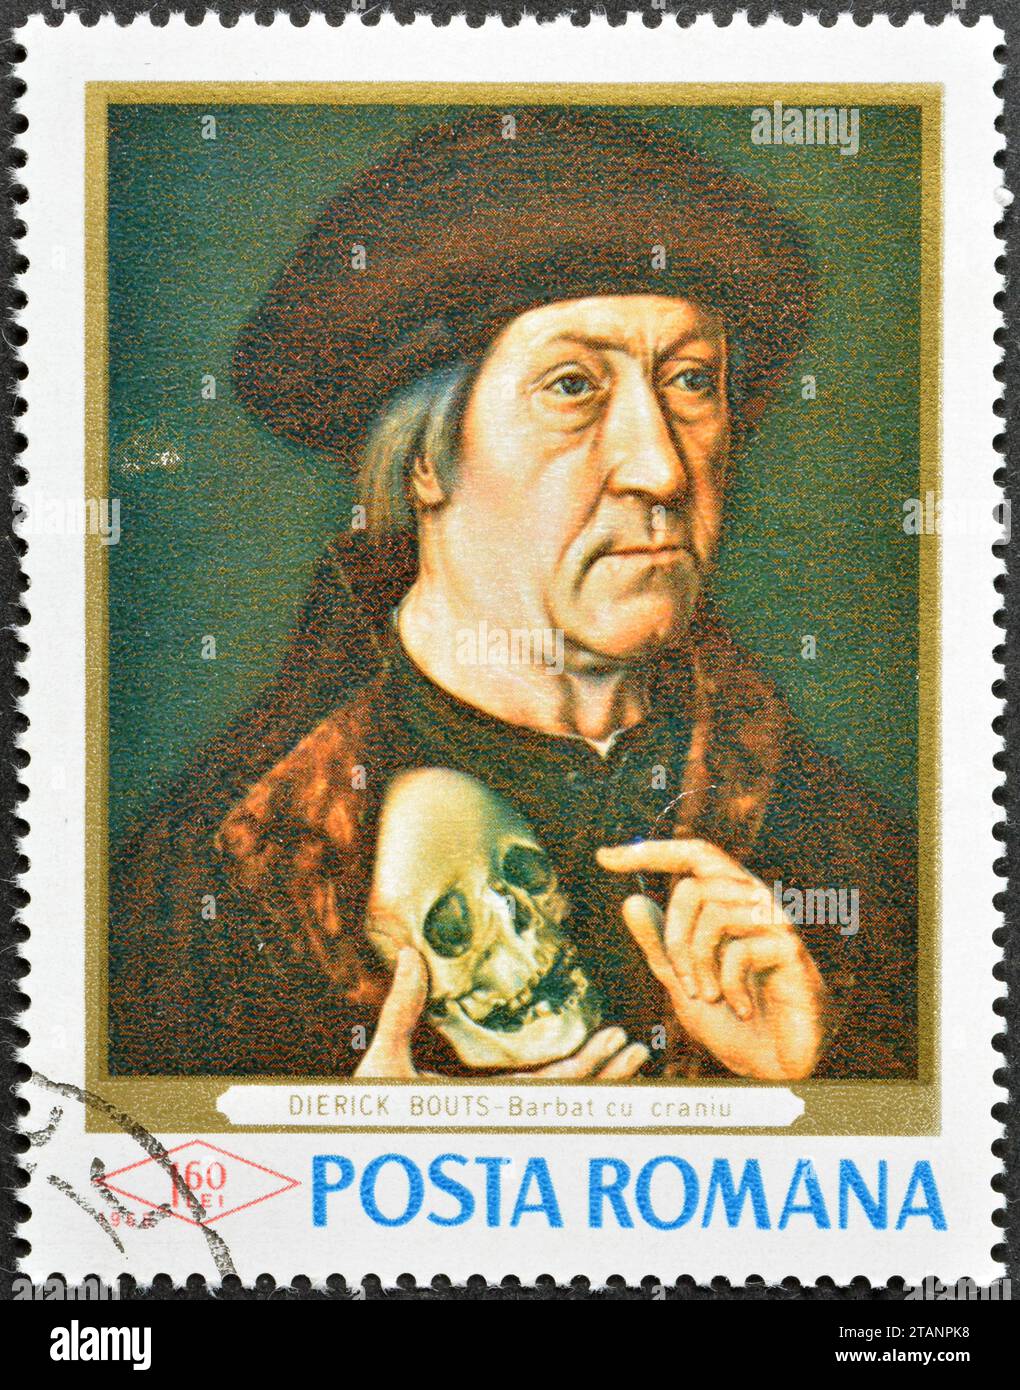 Timbre-poste annulé imprimé par la Roumanie, qui montre la peinture vieil homme avec crâne à la main droite, Dirck Bouts (1415 à 1475), peintures des galeries Banque D'Images